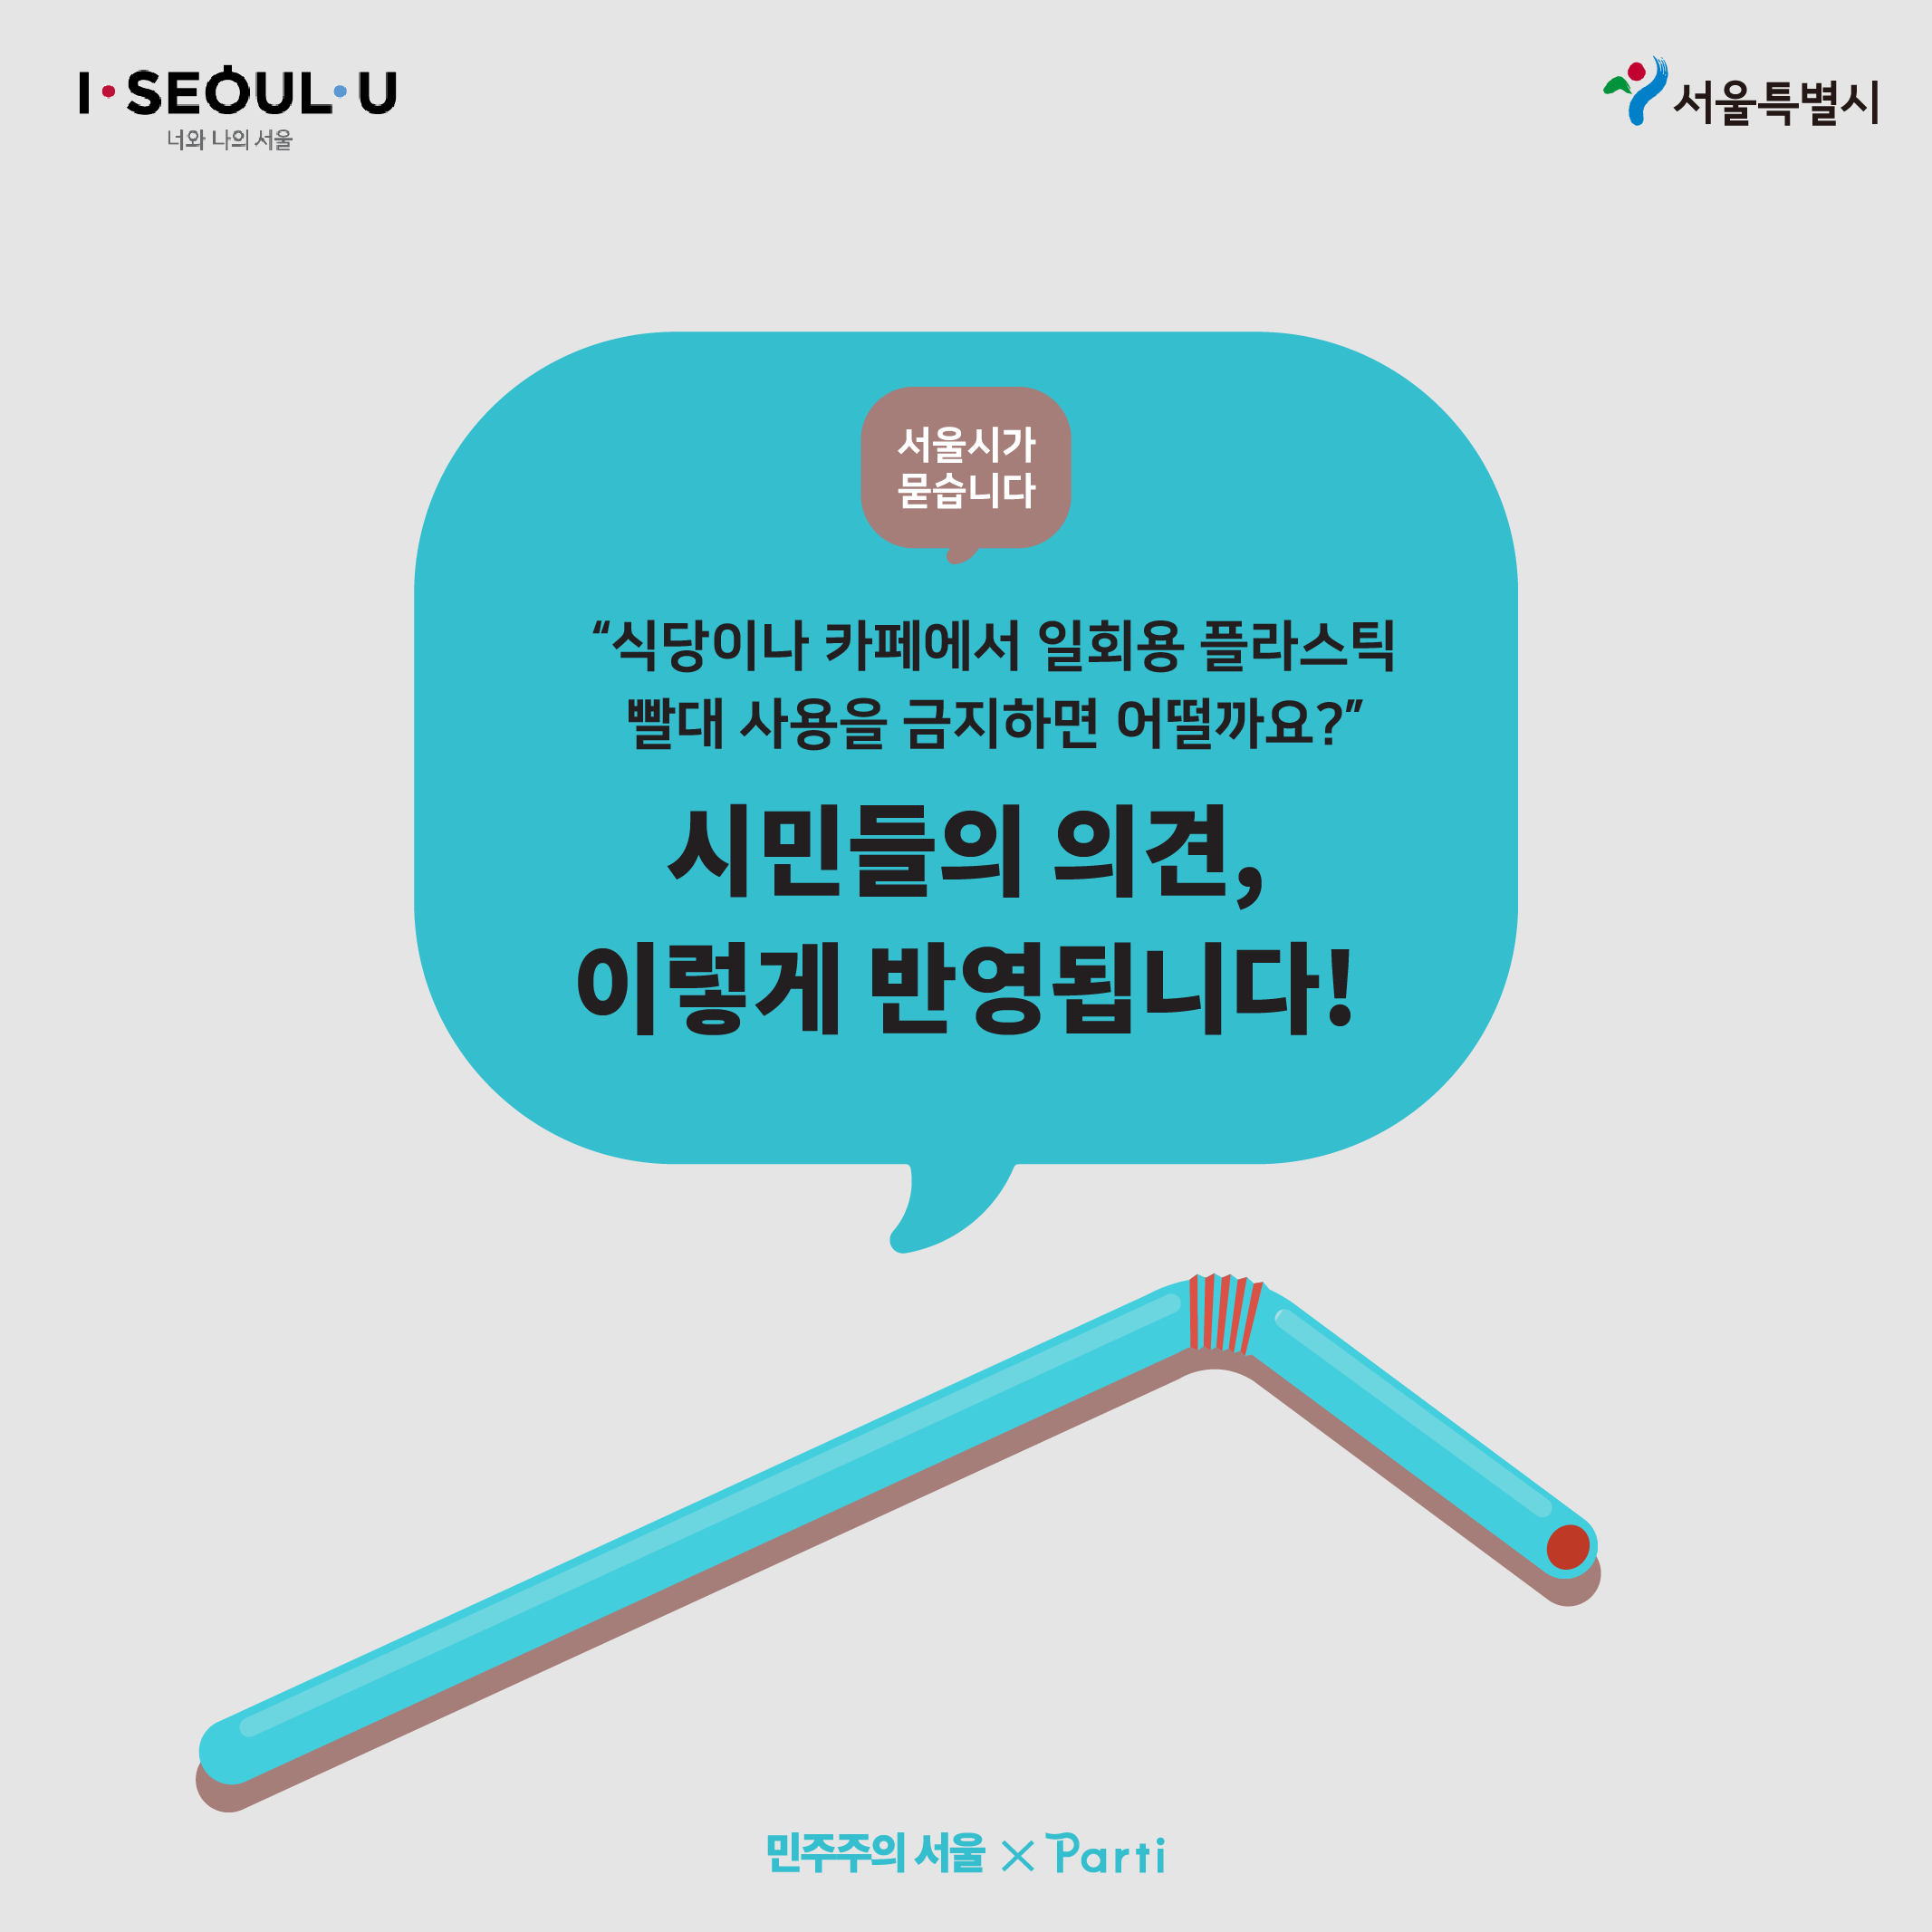 서울시가 묻습니다 “식당이나 카페에서 일회용 플라스틱 빨대 사용을 금지하면 어떨까요?”가 종료되었습니다. 시민들의 의견은 이렇게 반영합니다.